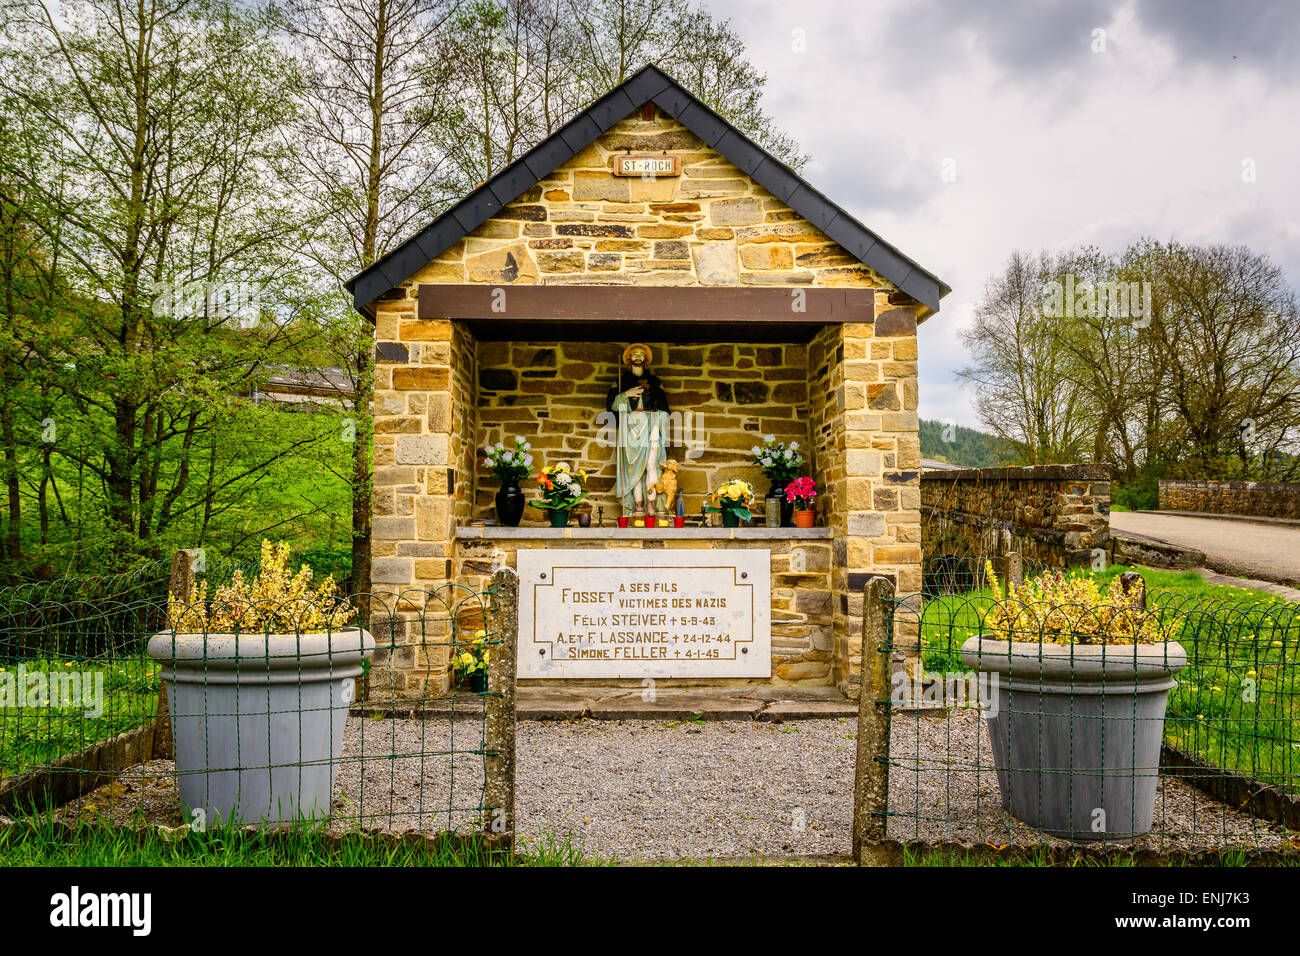 Mémorial pour les victimes des nazis dans un petit village dans les Ardennes Belges pendant la seconde guerre mondiale Banque D'Images